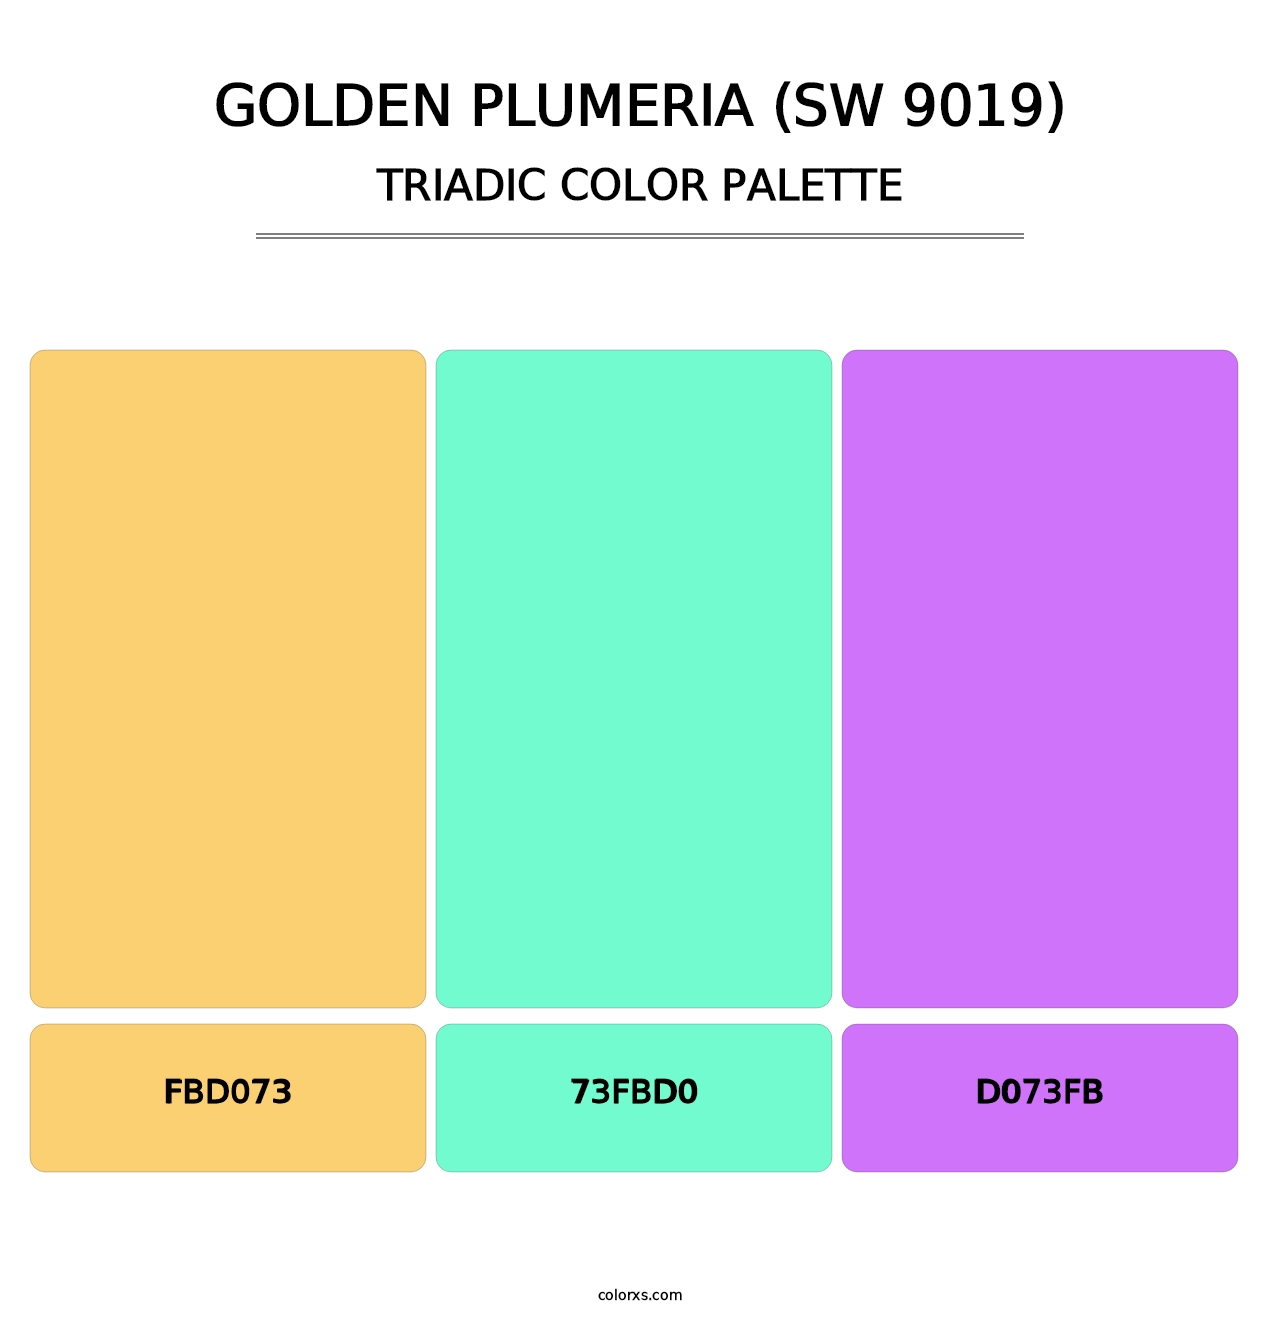 Golden Plumeria (SW 9019) - Triadic Color Palette